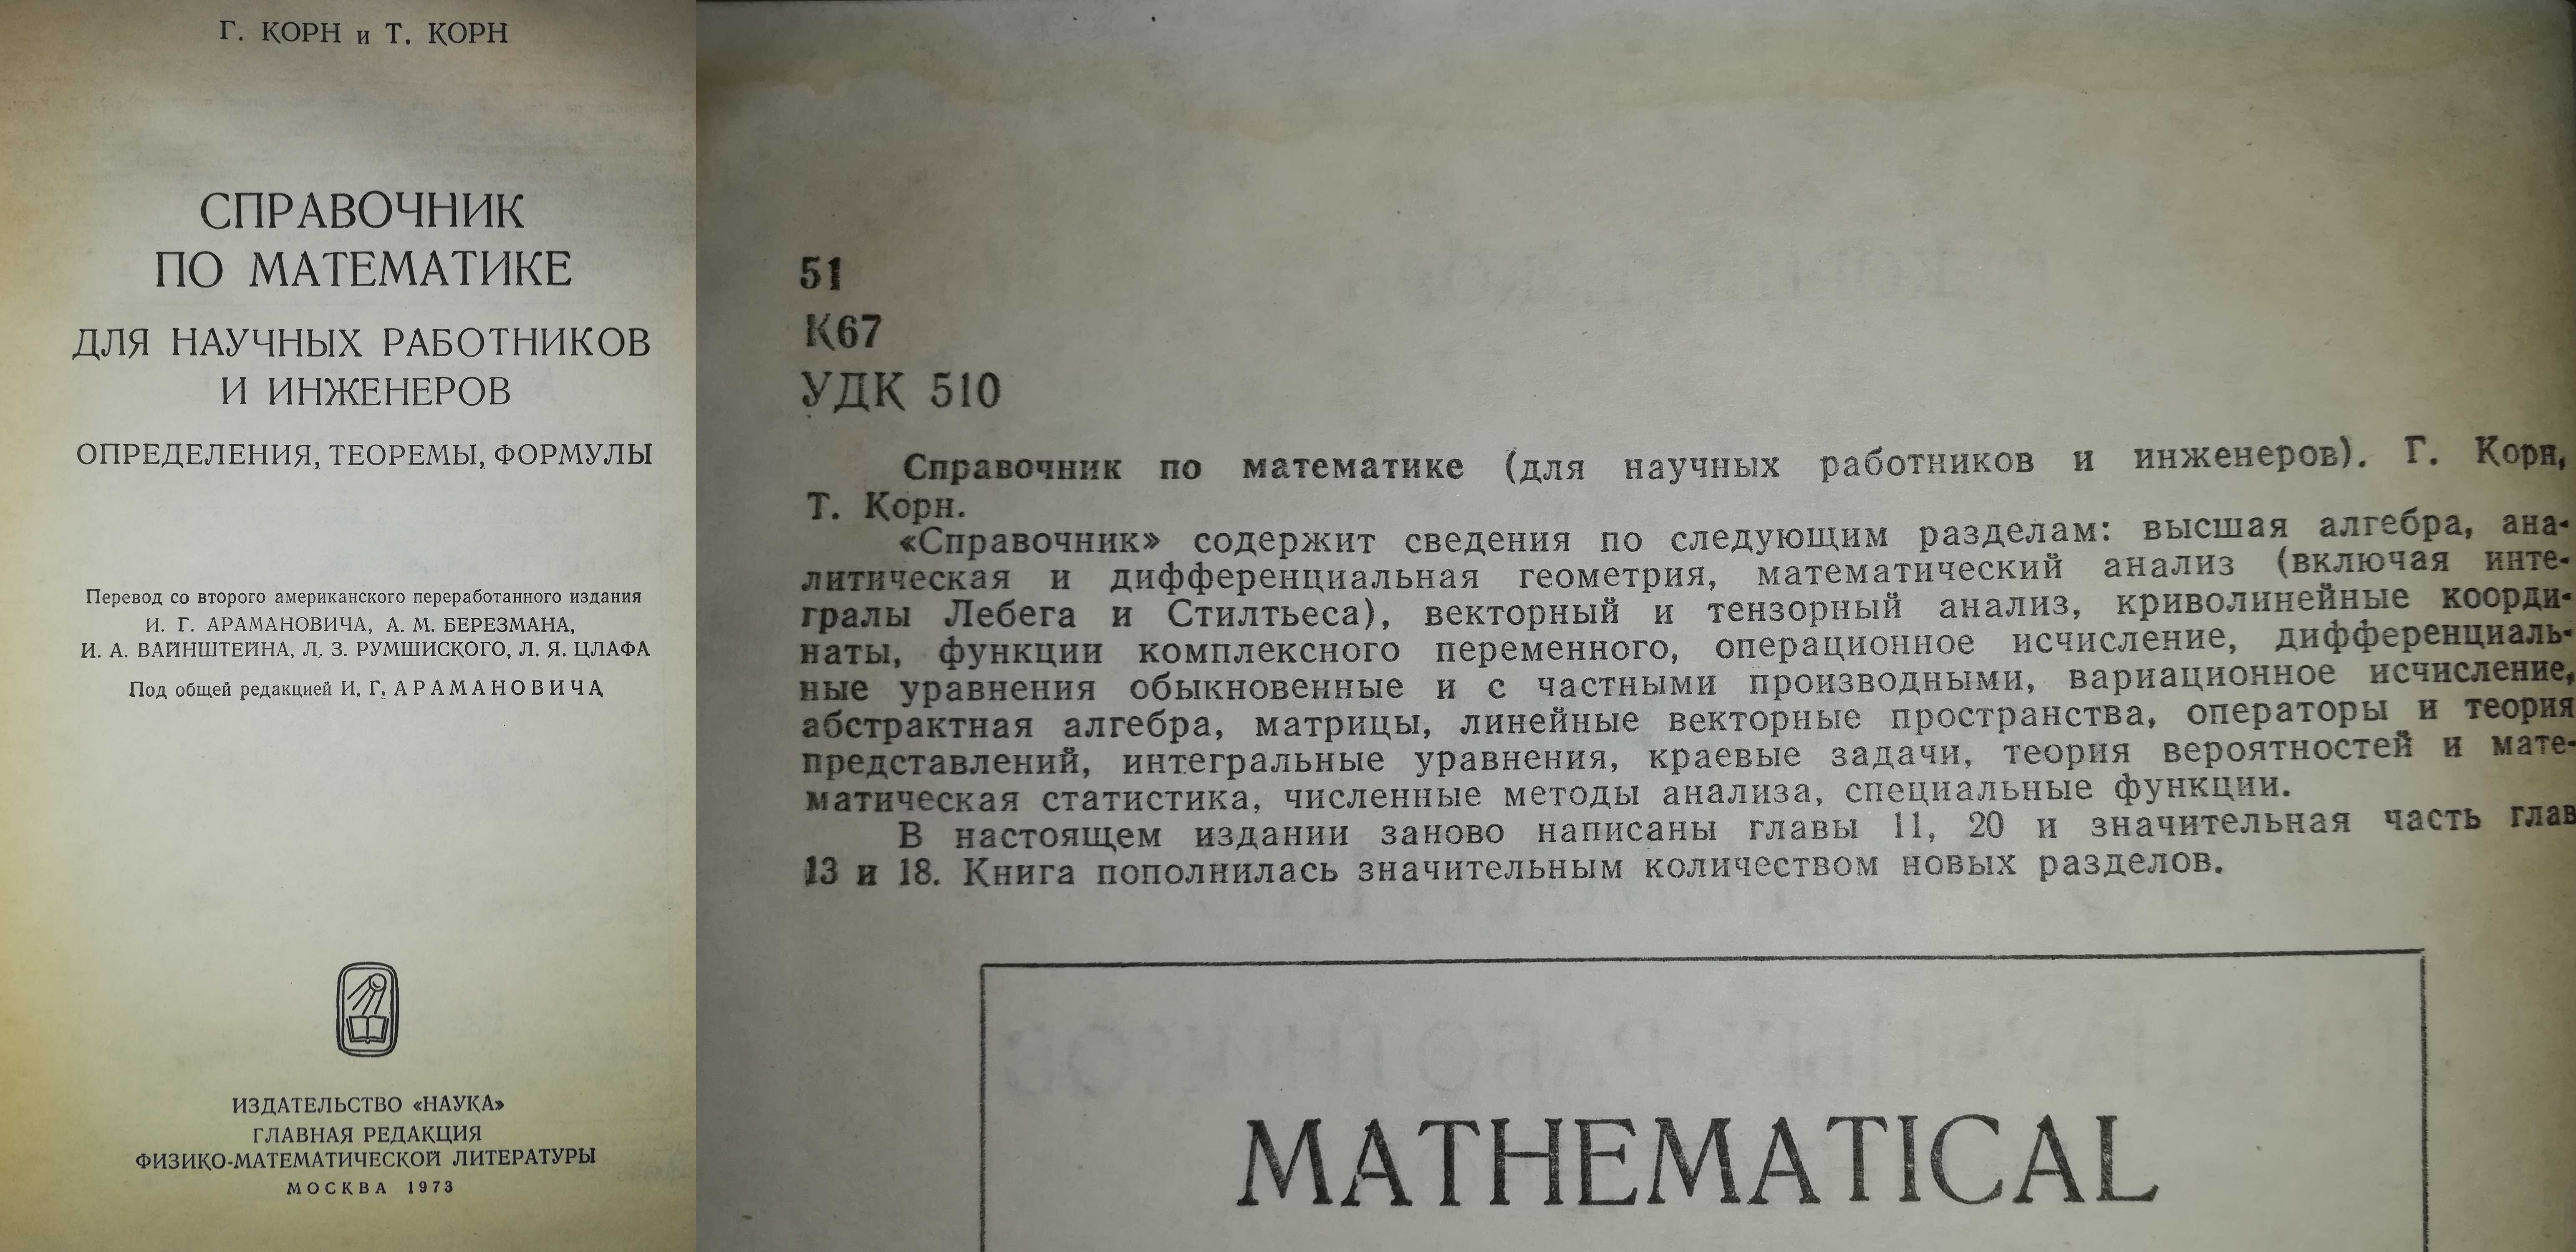 Справочники и пособия по Математике